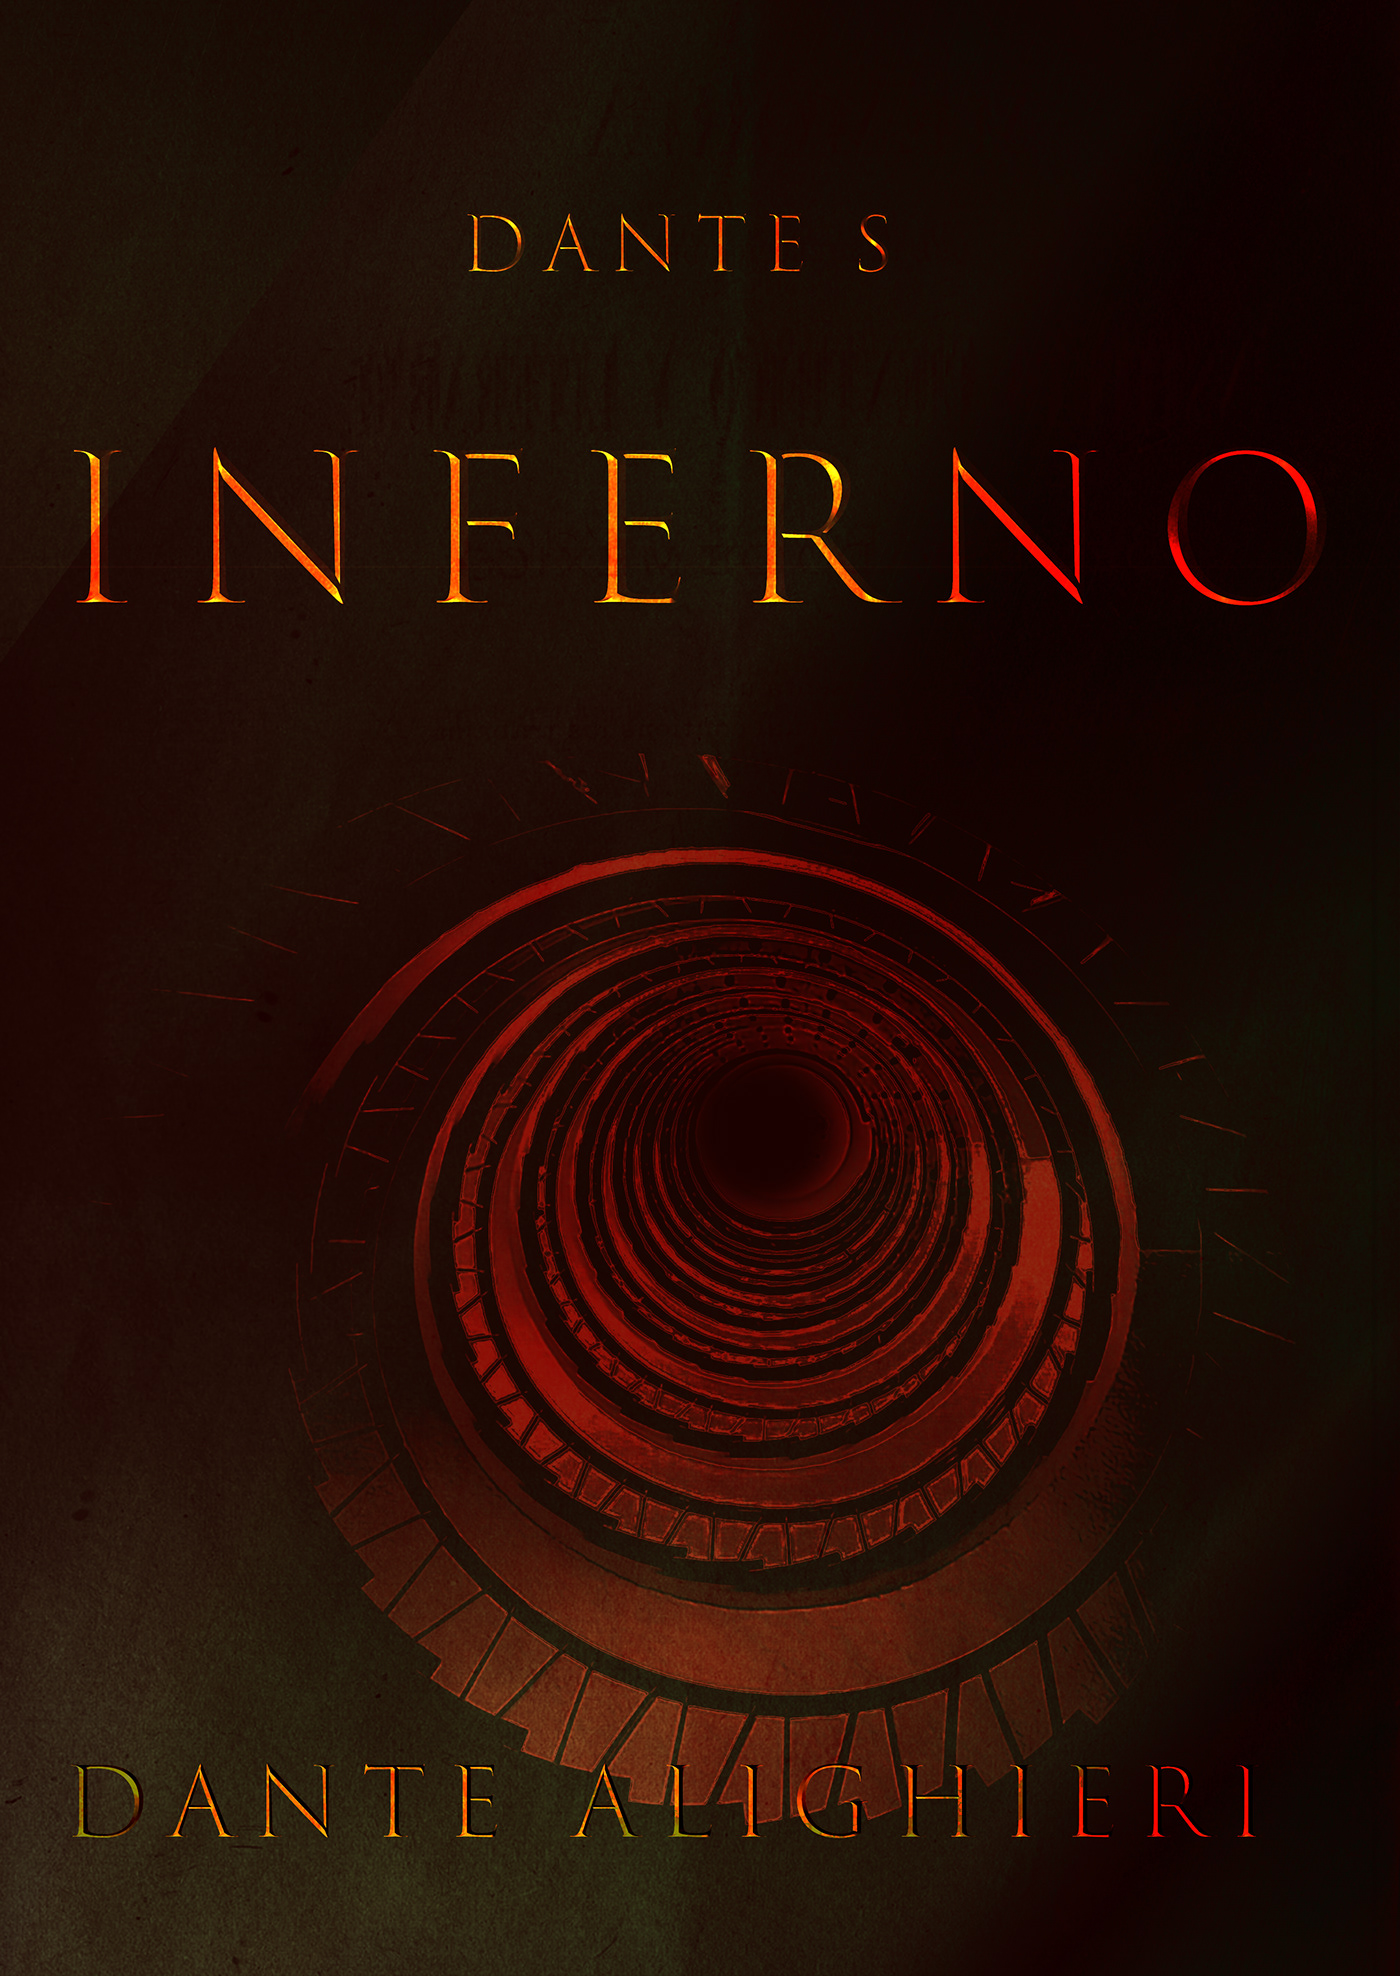 Dante's Inferno Book Cover Design covers cover design book cover book design books book cover design